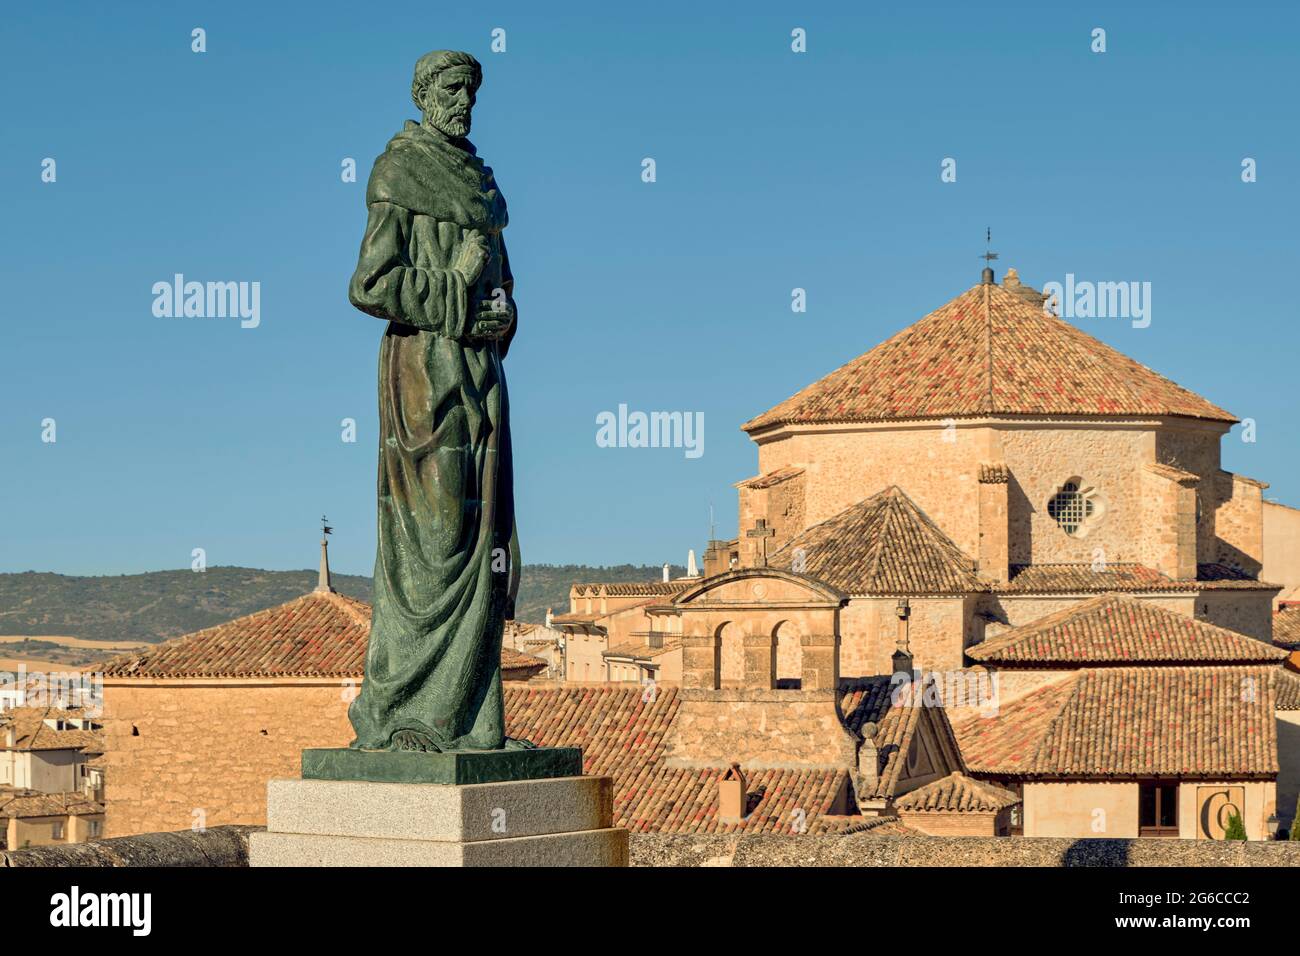 Scultura di Fray Luis de Leon realizzata in bronzo dallo scultore Javier Barrios e la chiesa di San Pedro sullo sfondo. Cuenca, Castilla la Mancha, Spagna Foto Stock